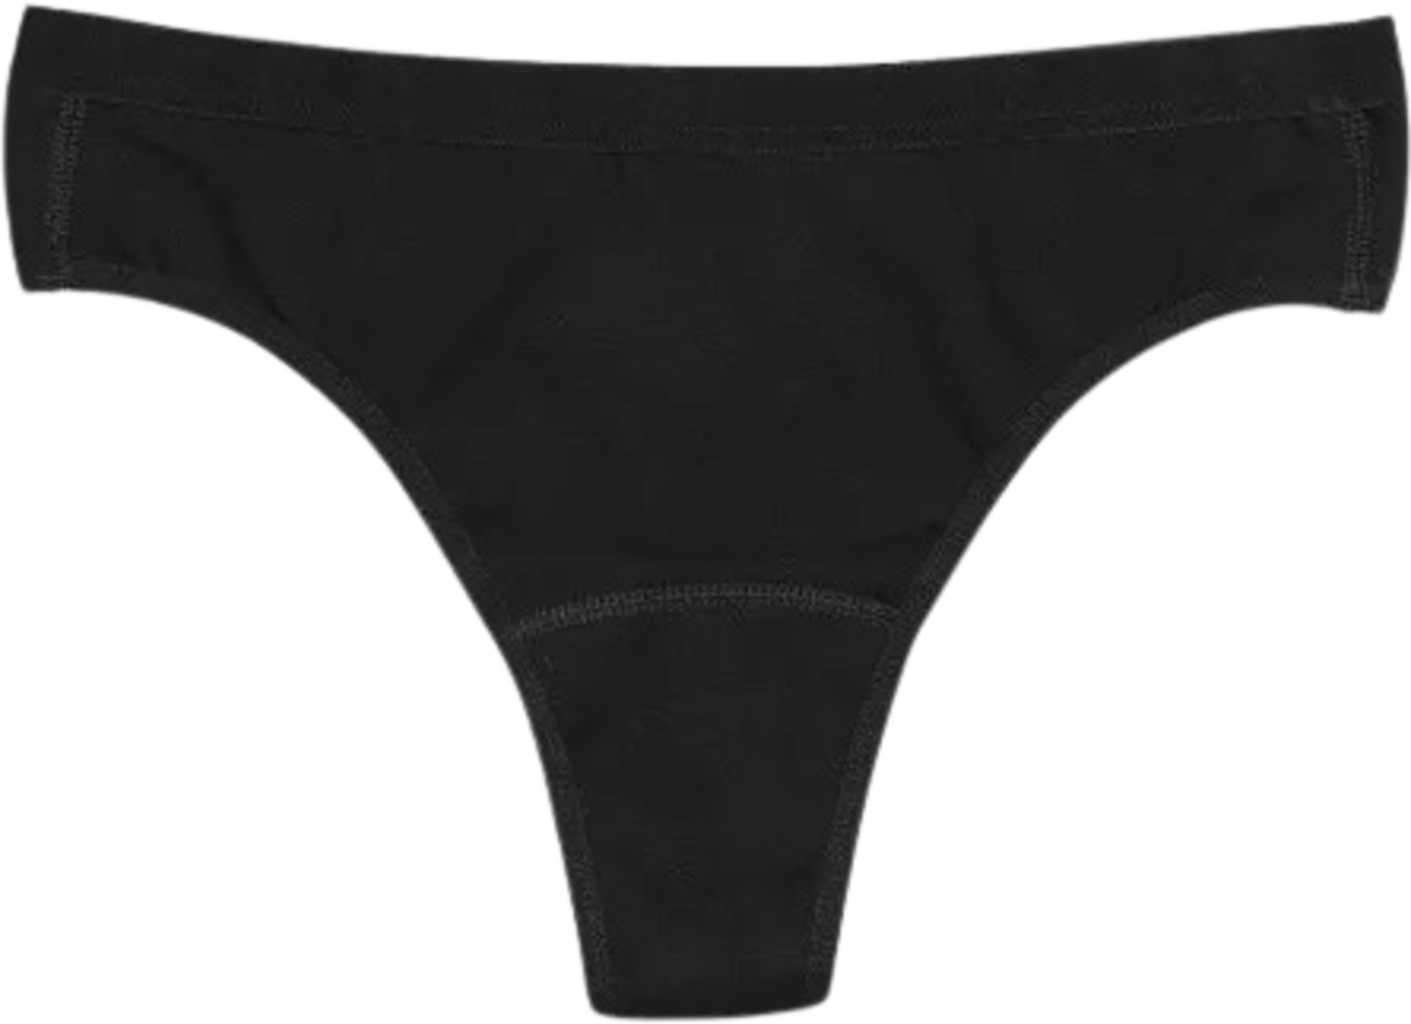 Imse Black Thong Period Underwear - Light Flow - Ecco Verde Online